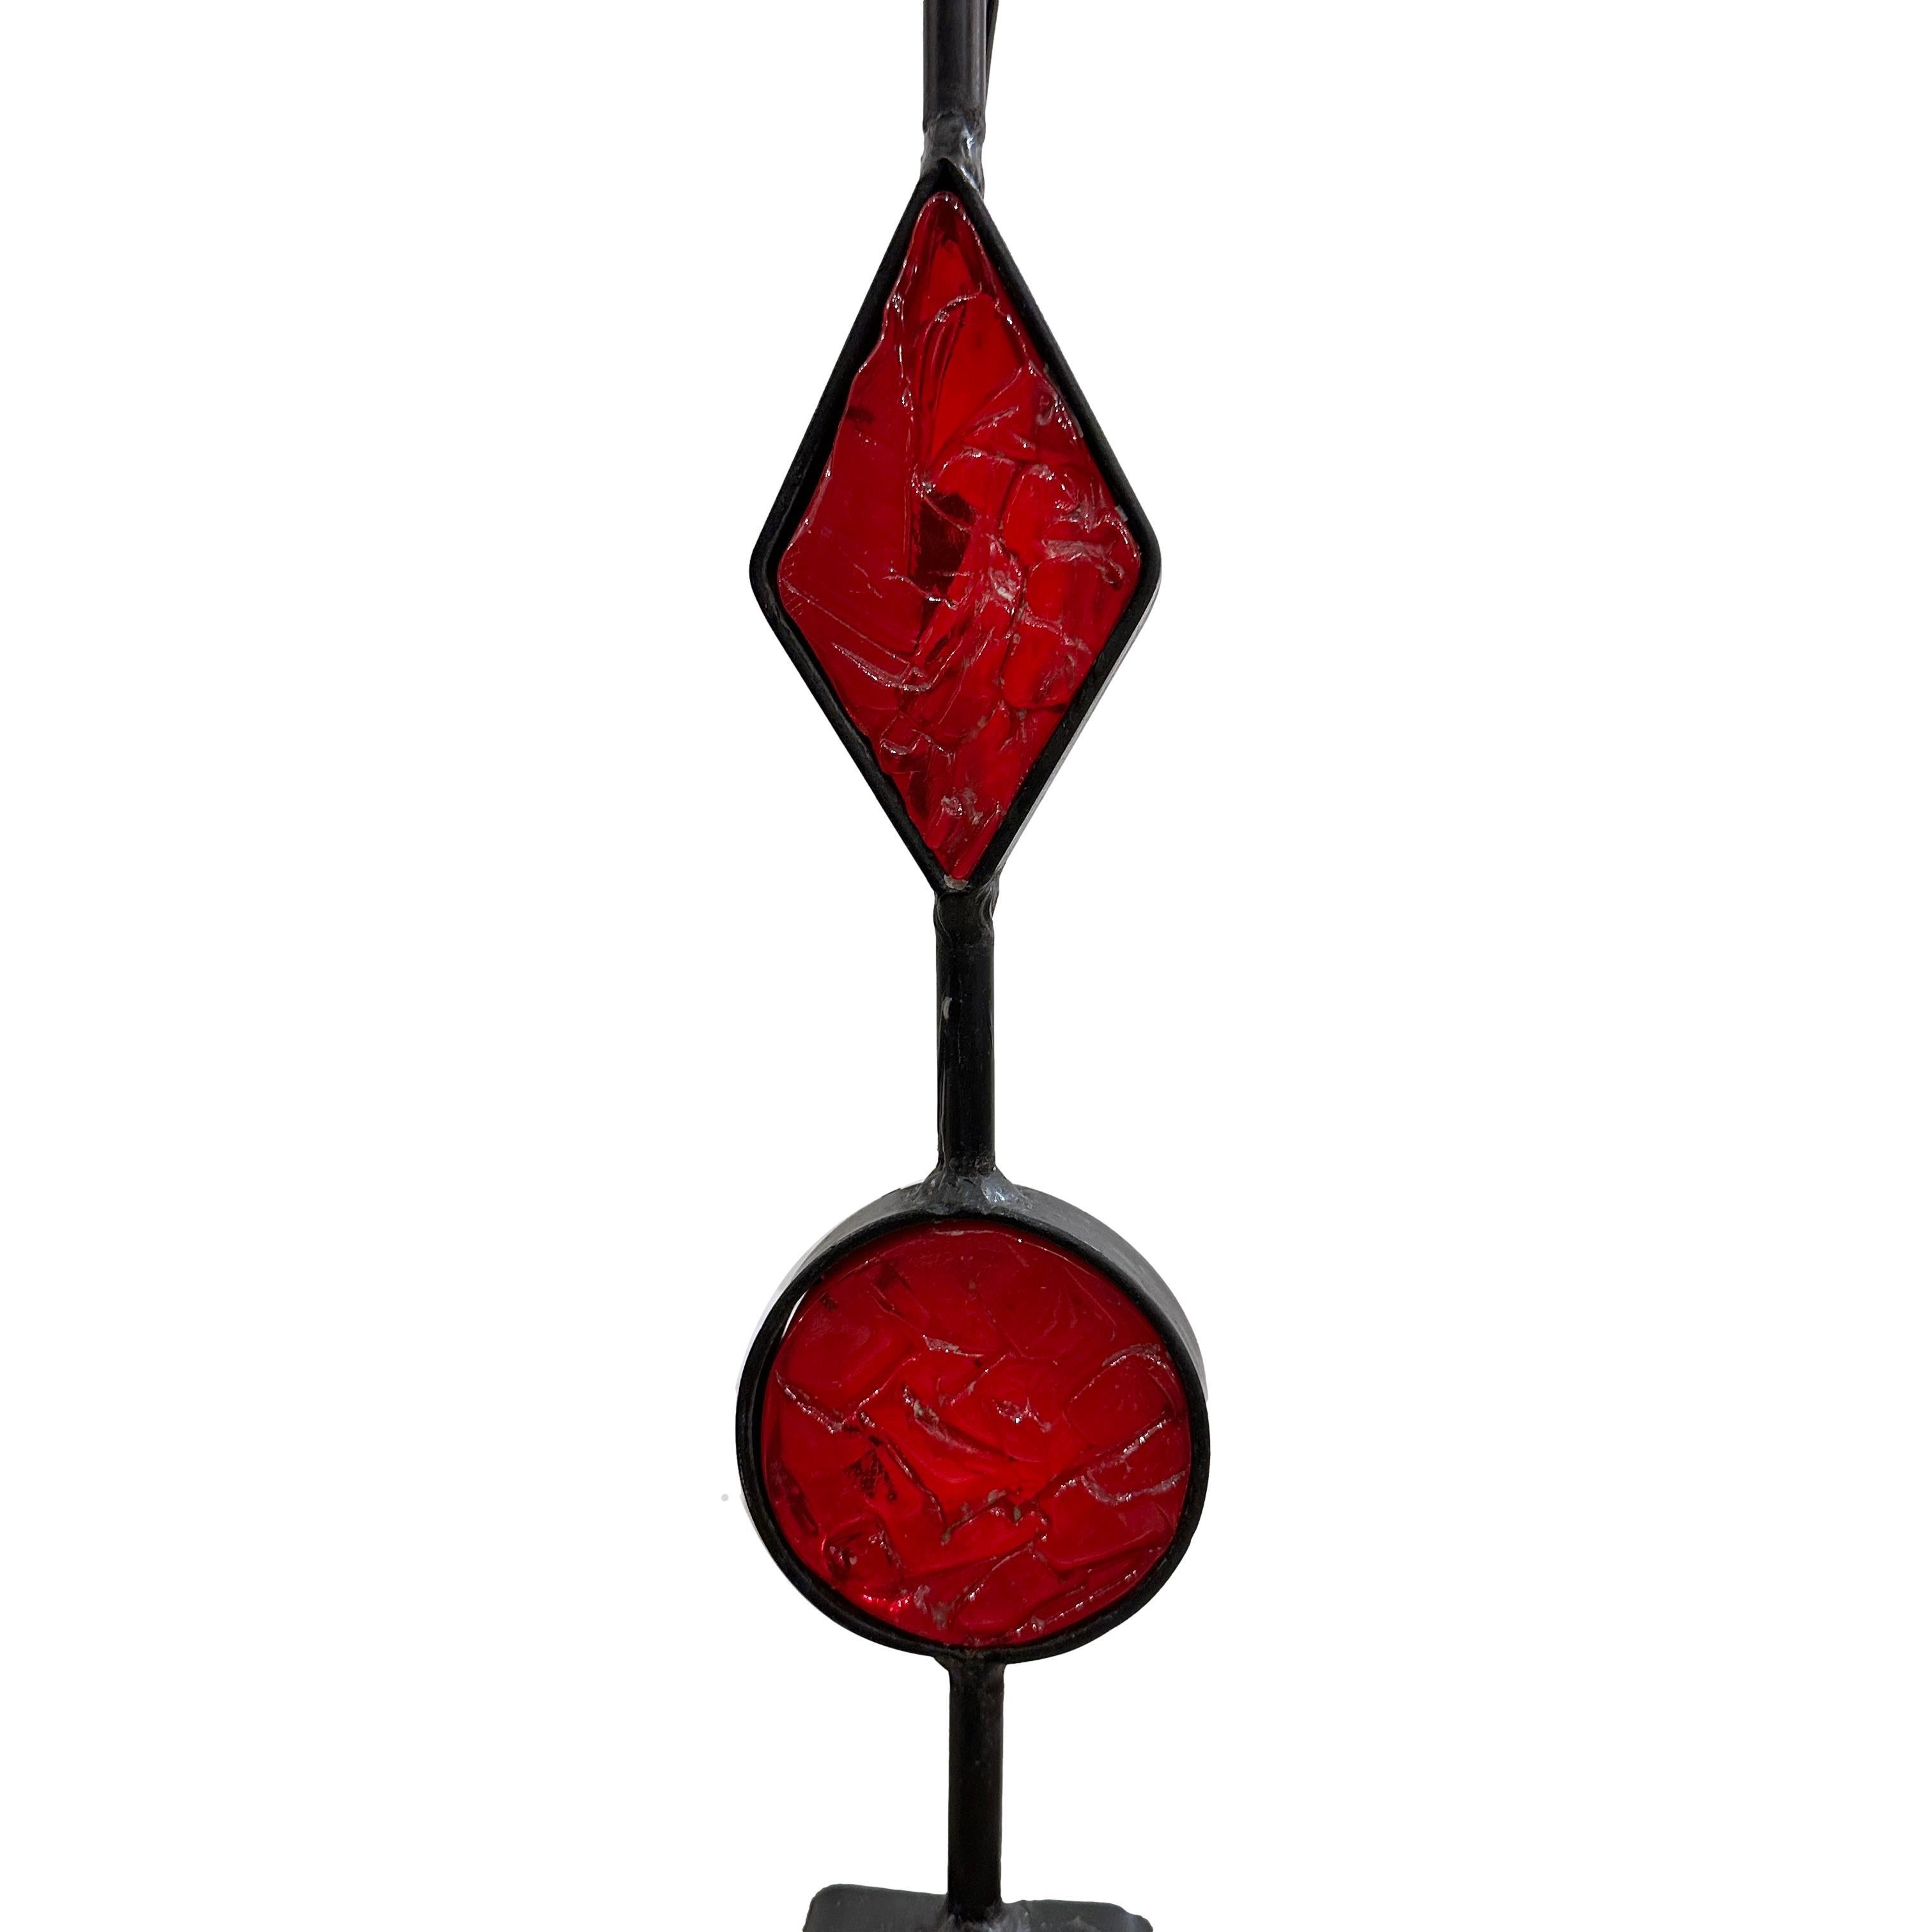 Lampe danoise en fer des années 1950 avec des inserts en verre rouge.

Mesures :
Hauteur totale : 49